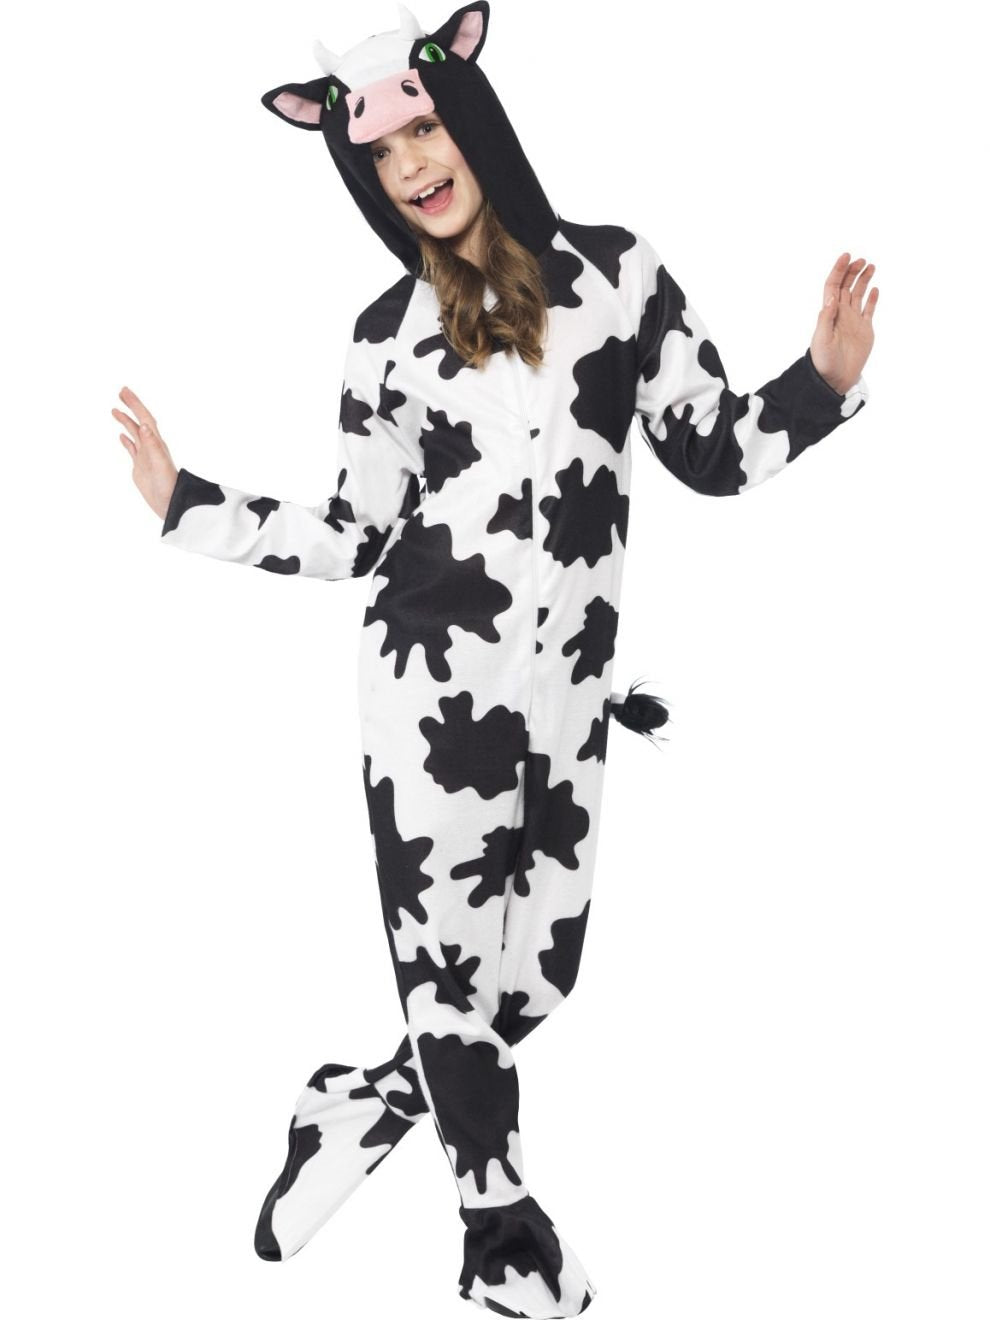 Costume Child Cow Onsie Medium